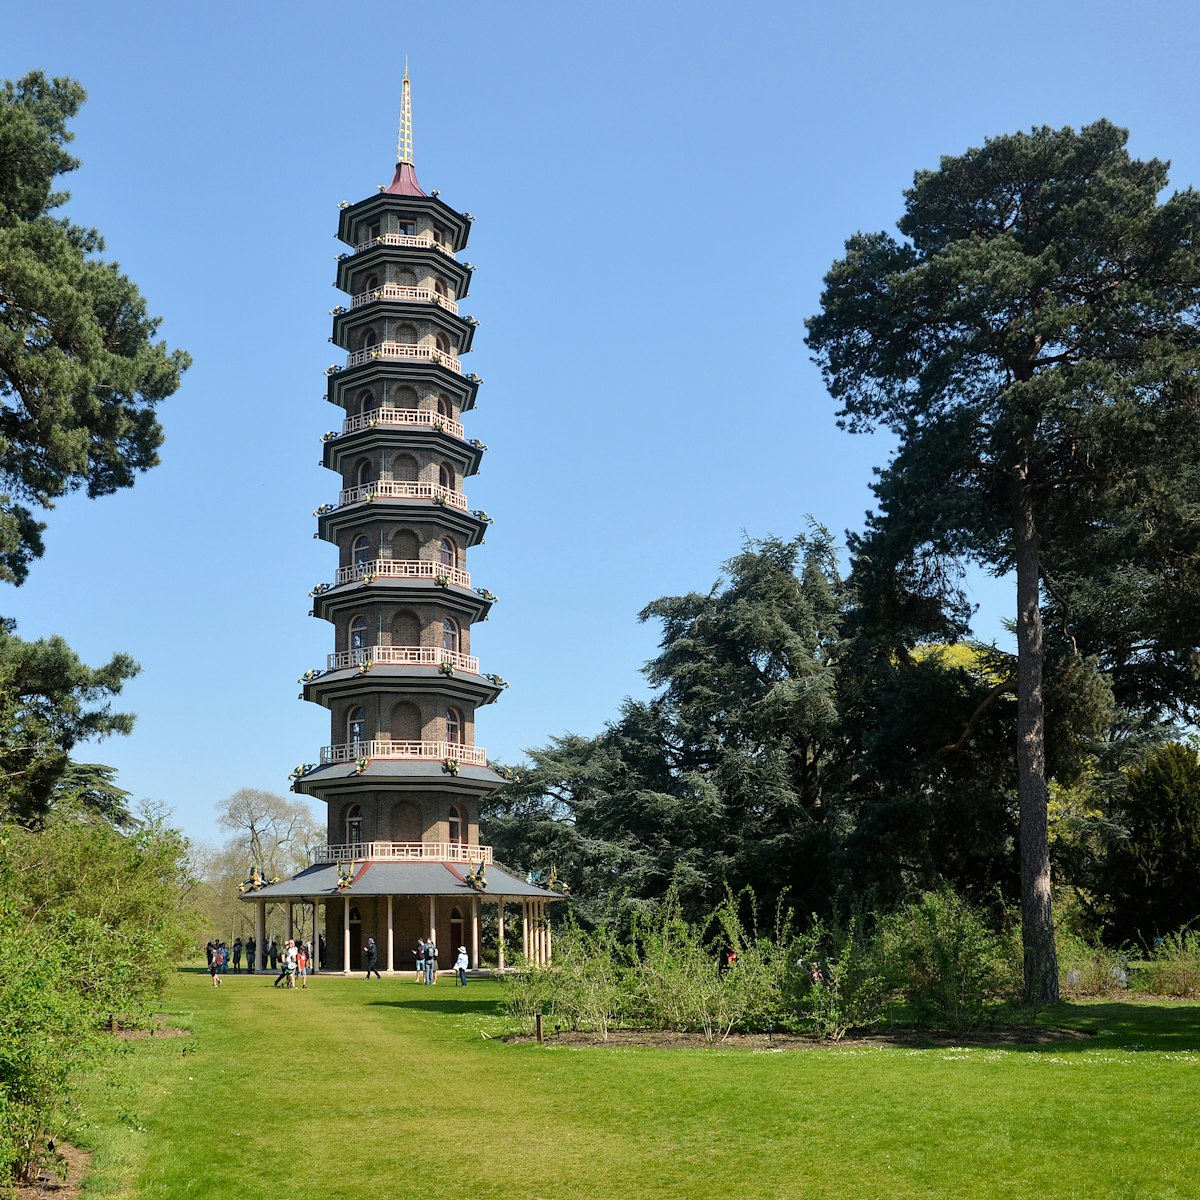 The Great Pagoda at Kew Gardens.